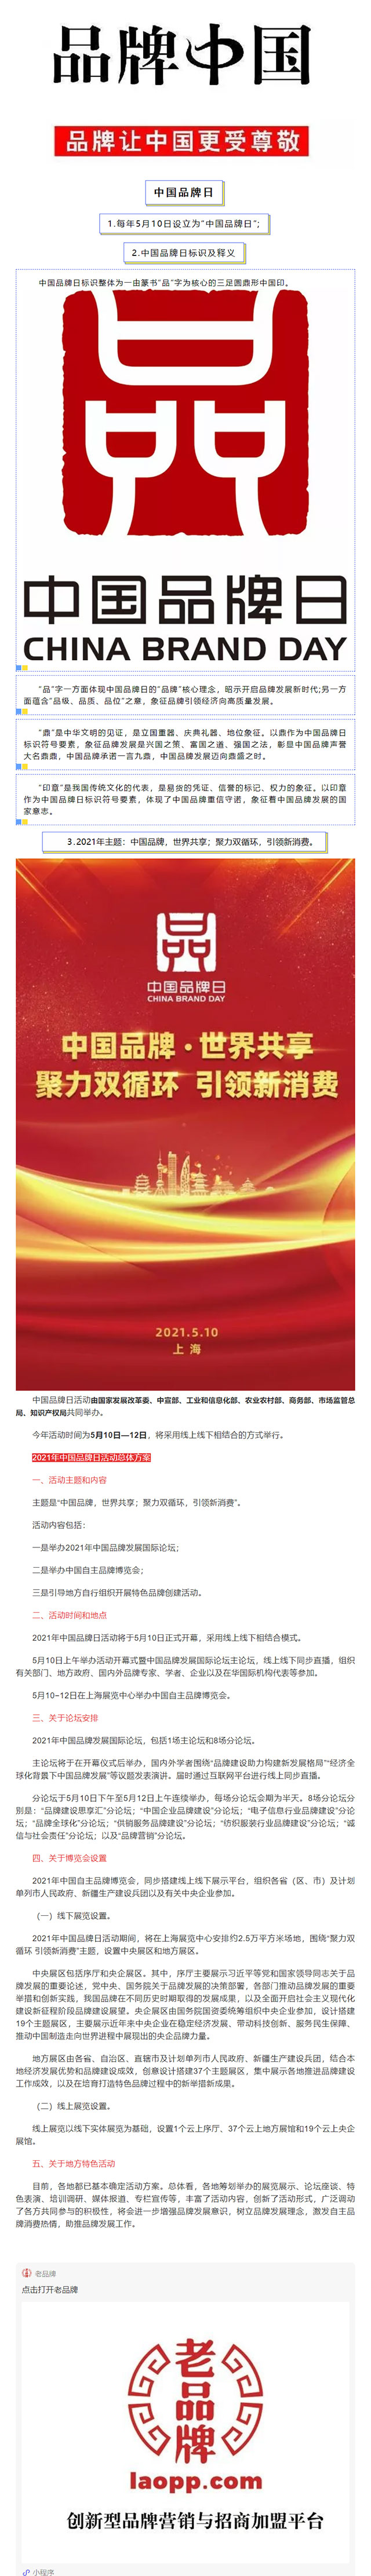 中国品牌日5周年丨中国品牌将在这场活动集体亮相